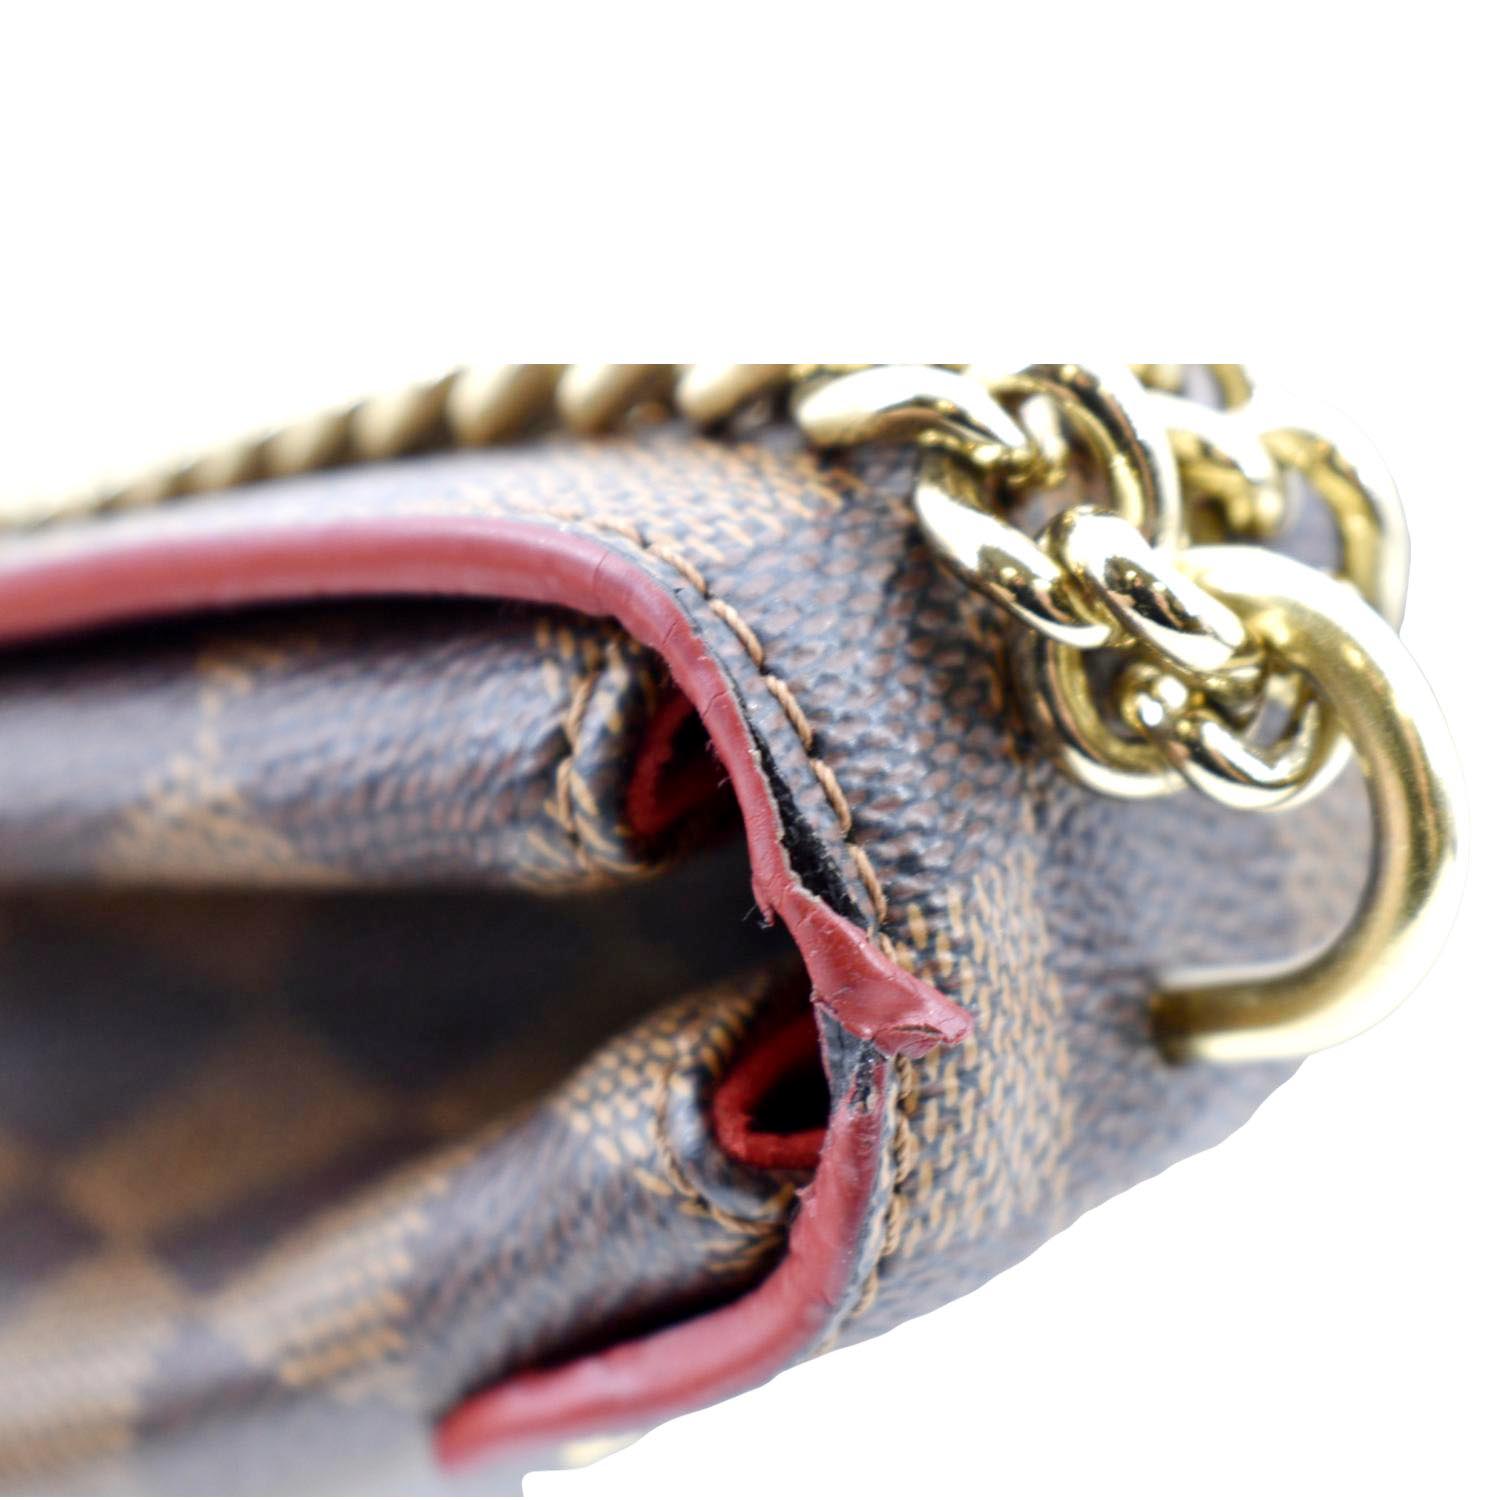 Louis Vuitton Caissa Chain Damier Ebene Shoulder Bag